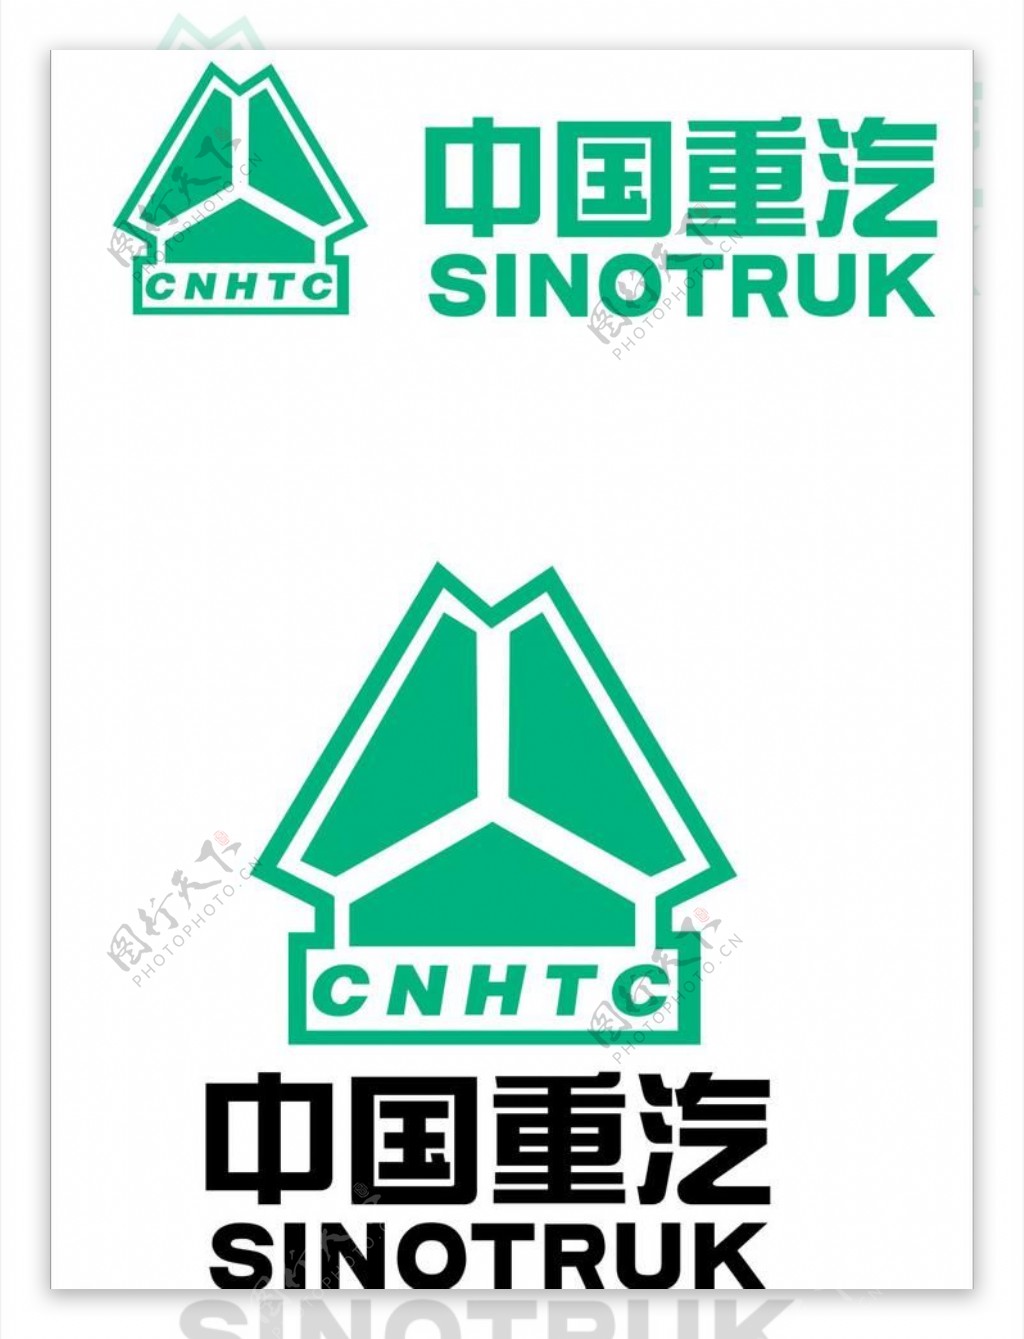 中国重汽logo图片